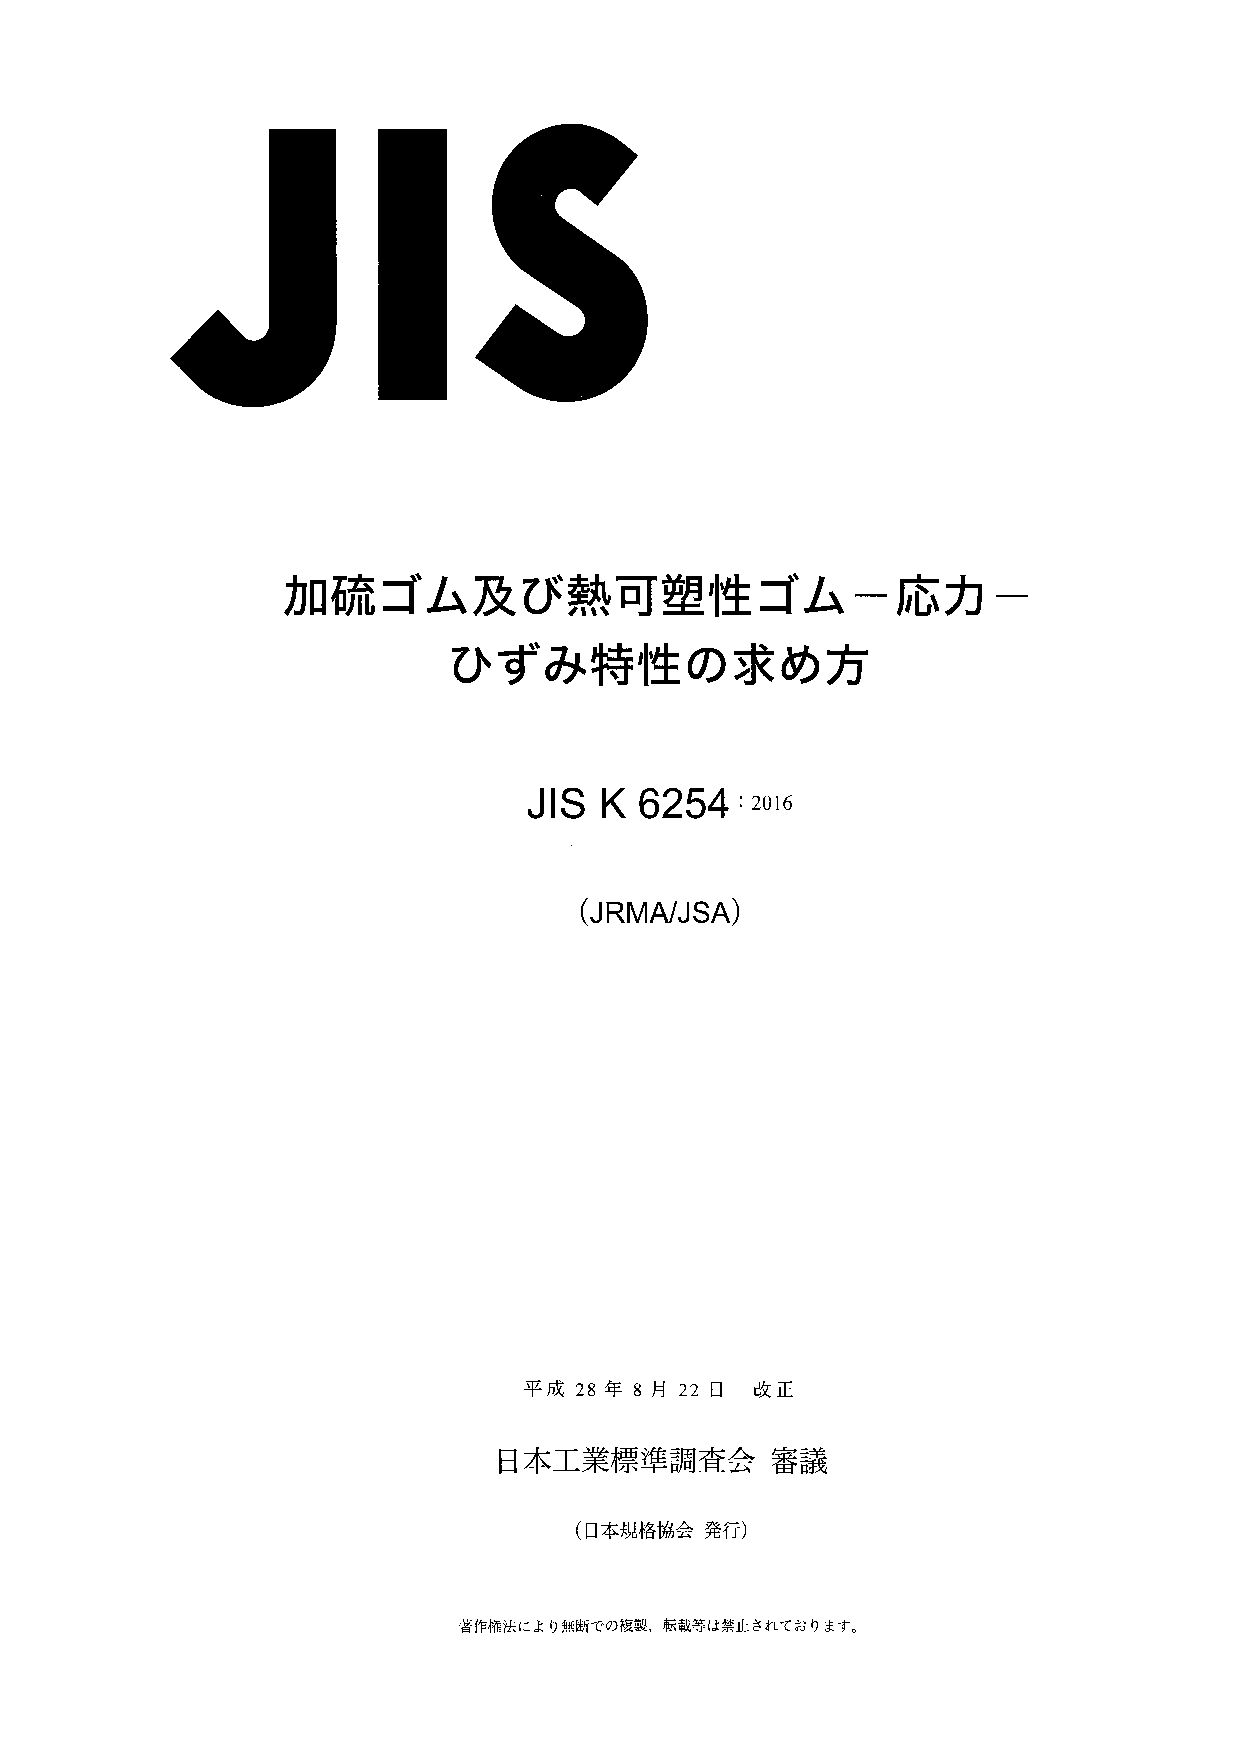 JIS K 6254:2016封面图